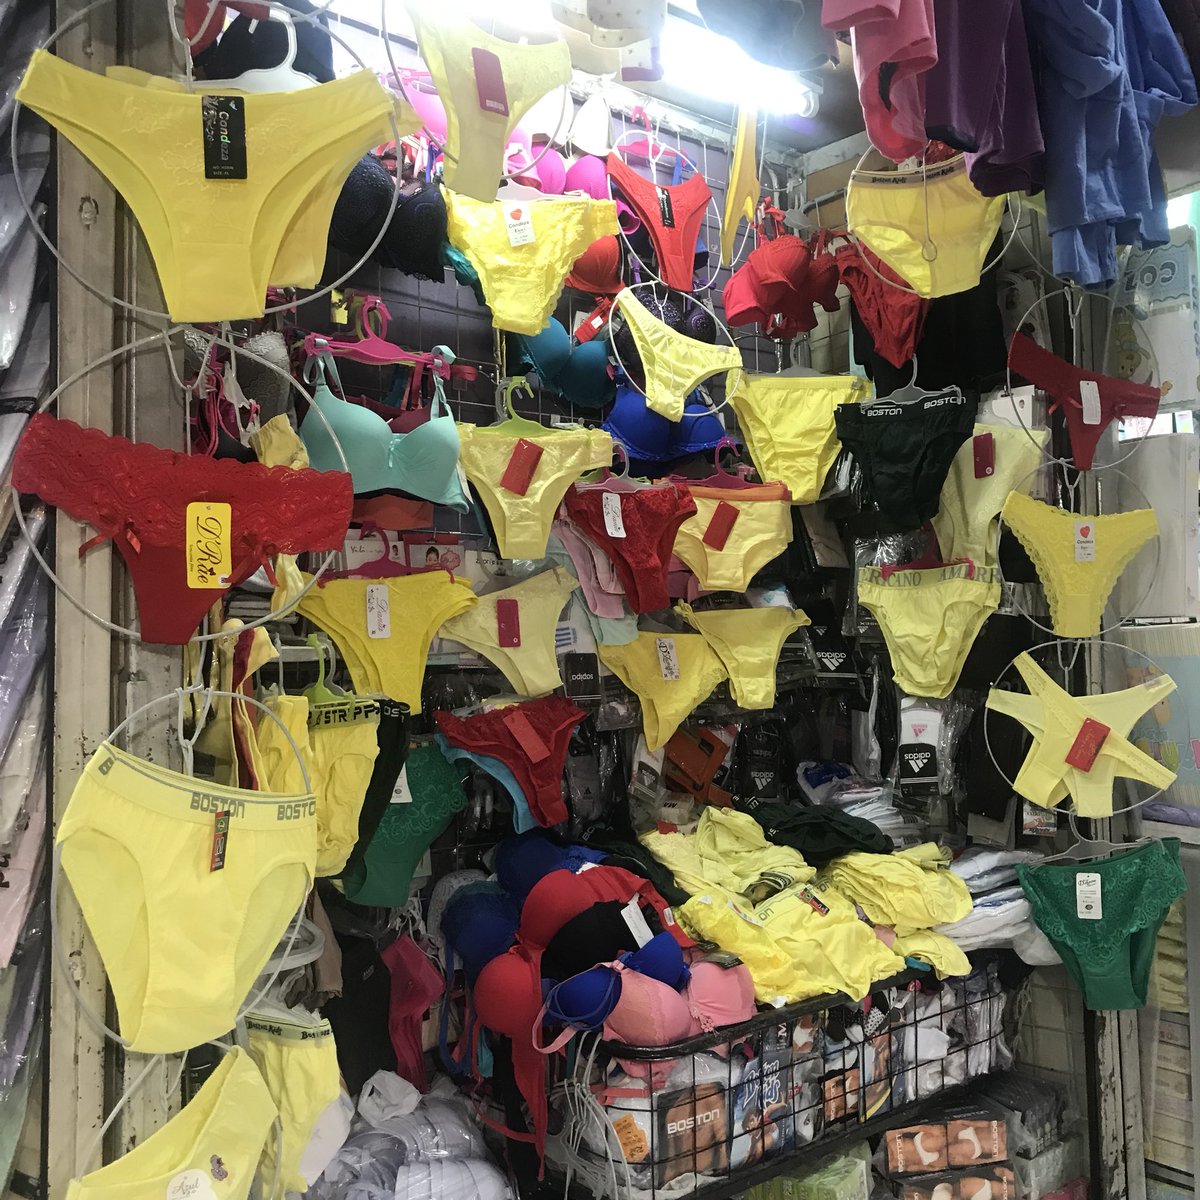 ひとりっp Twitterissa ペルーでは新年に黄色いものを身につけると幸運を呼び込めると言われていて 中でも黄色い下着 新品 は最強らしいです というわけで街中あちこちでこんな光景が